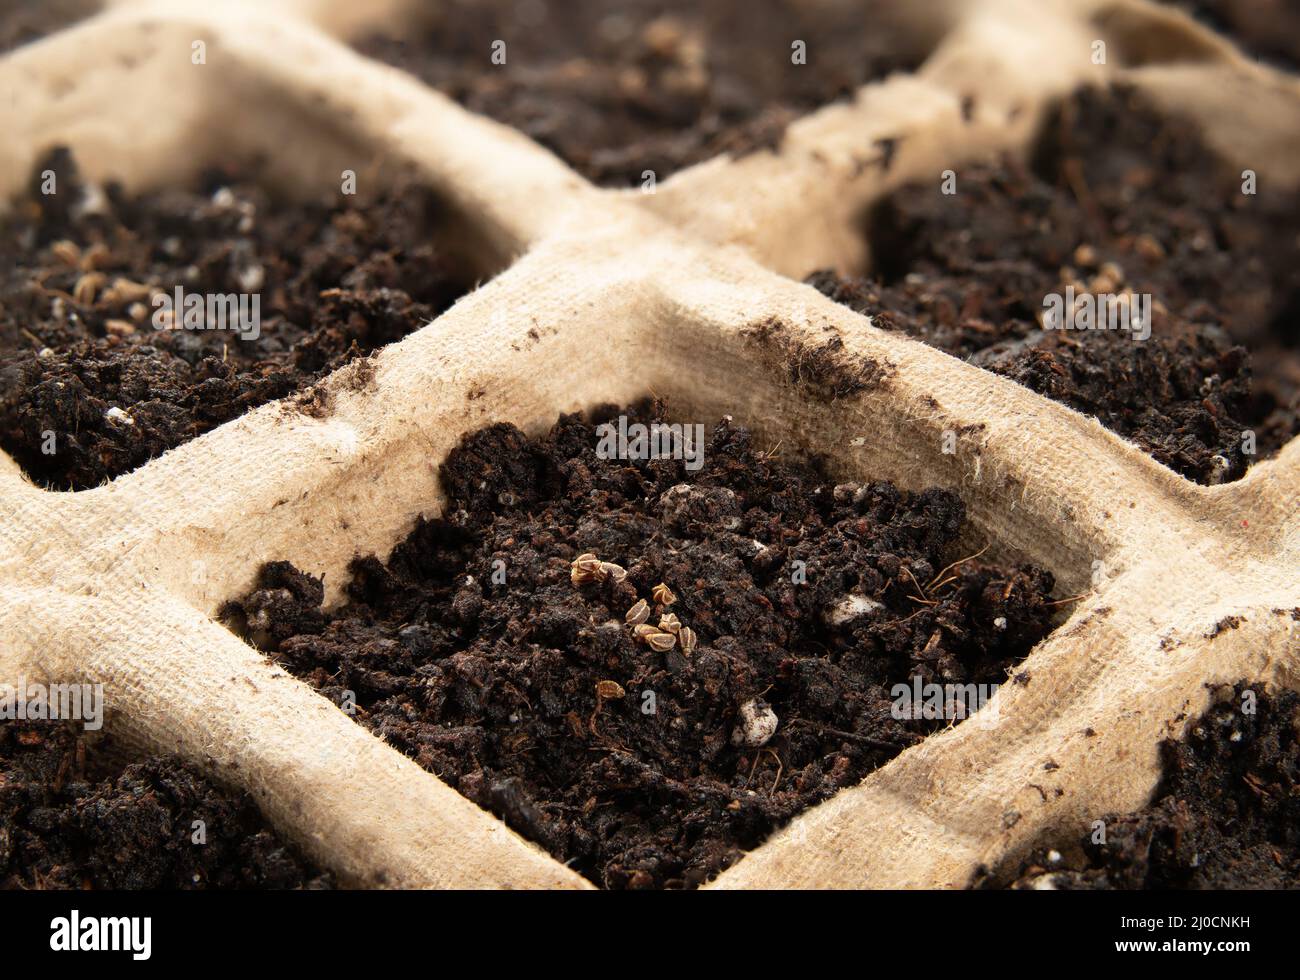 Sellerie-Samen in der Eintopf-Schale mit Blumenerde, Nahaufnahme. Makro von winzigen Tango Bio-Sellerie-Samen auch als Apium graveolens bekannt. Biodegrada Stockfoto